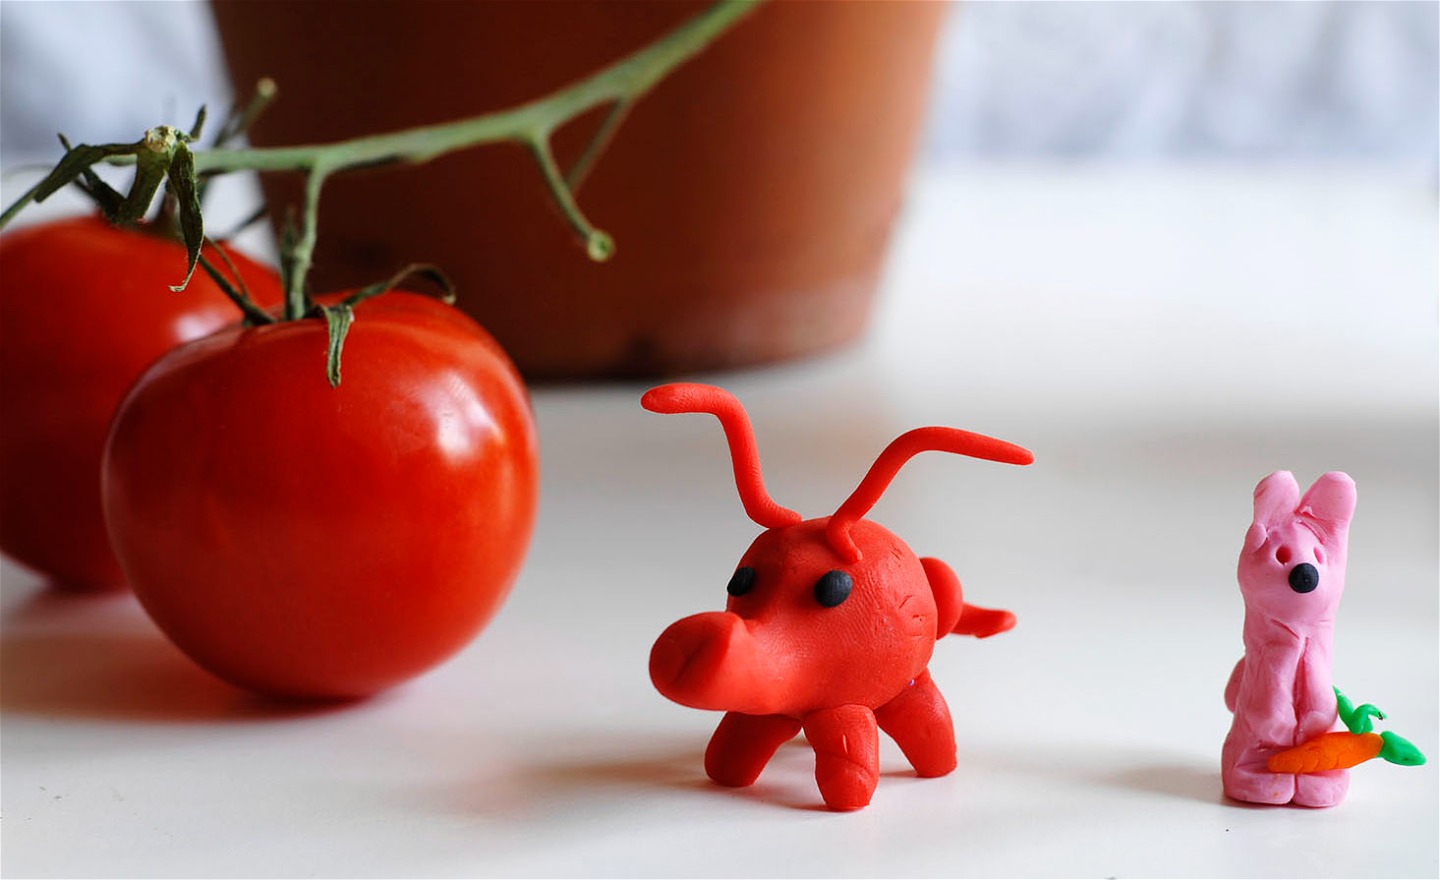 Två fantasifigurer gjorda i lera och två tomater.